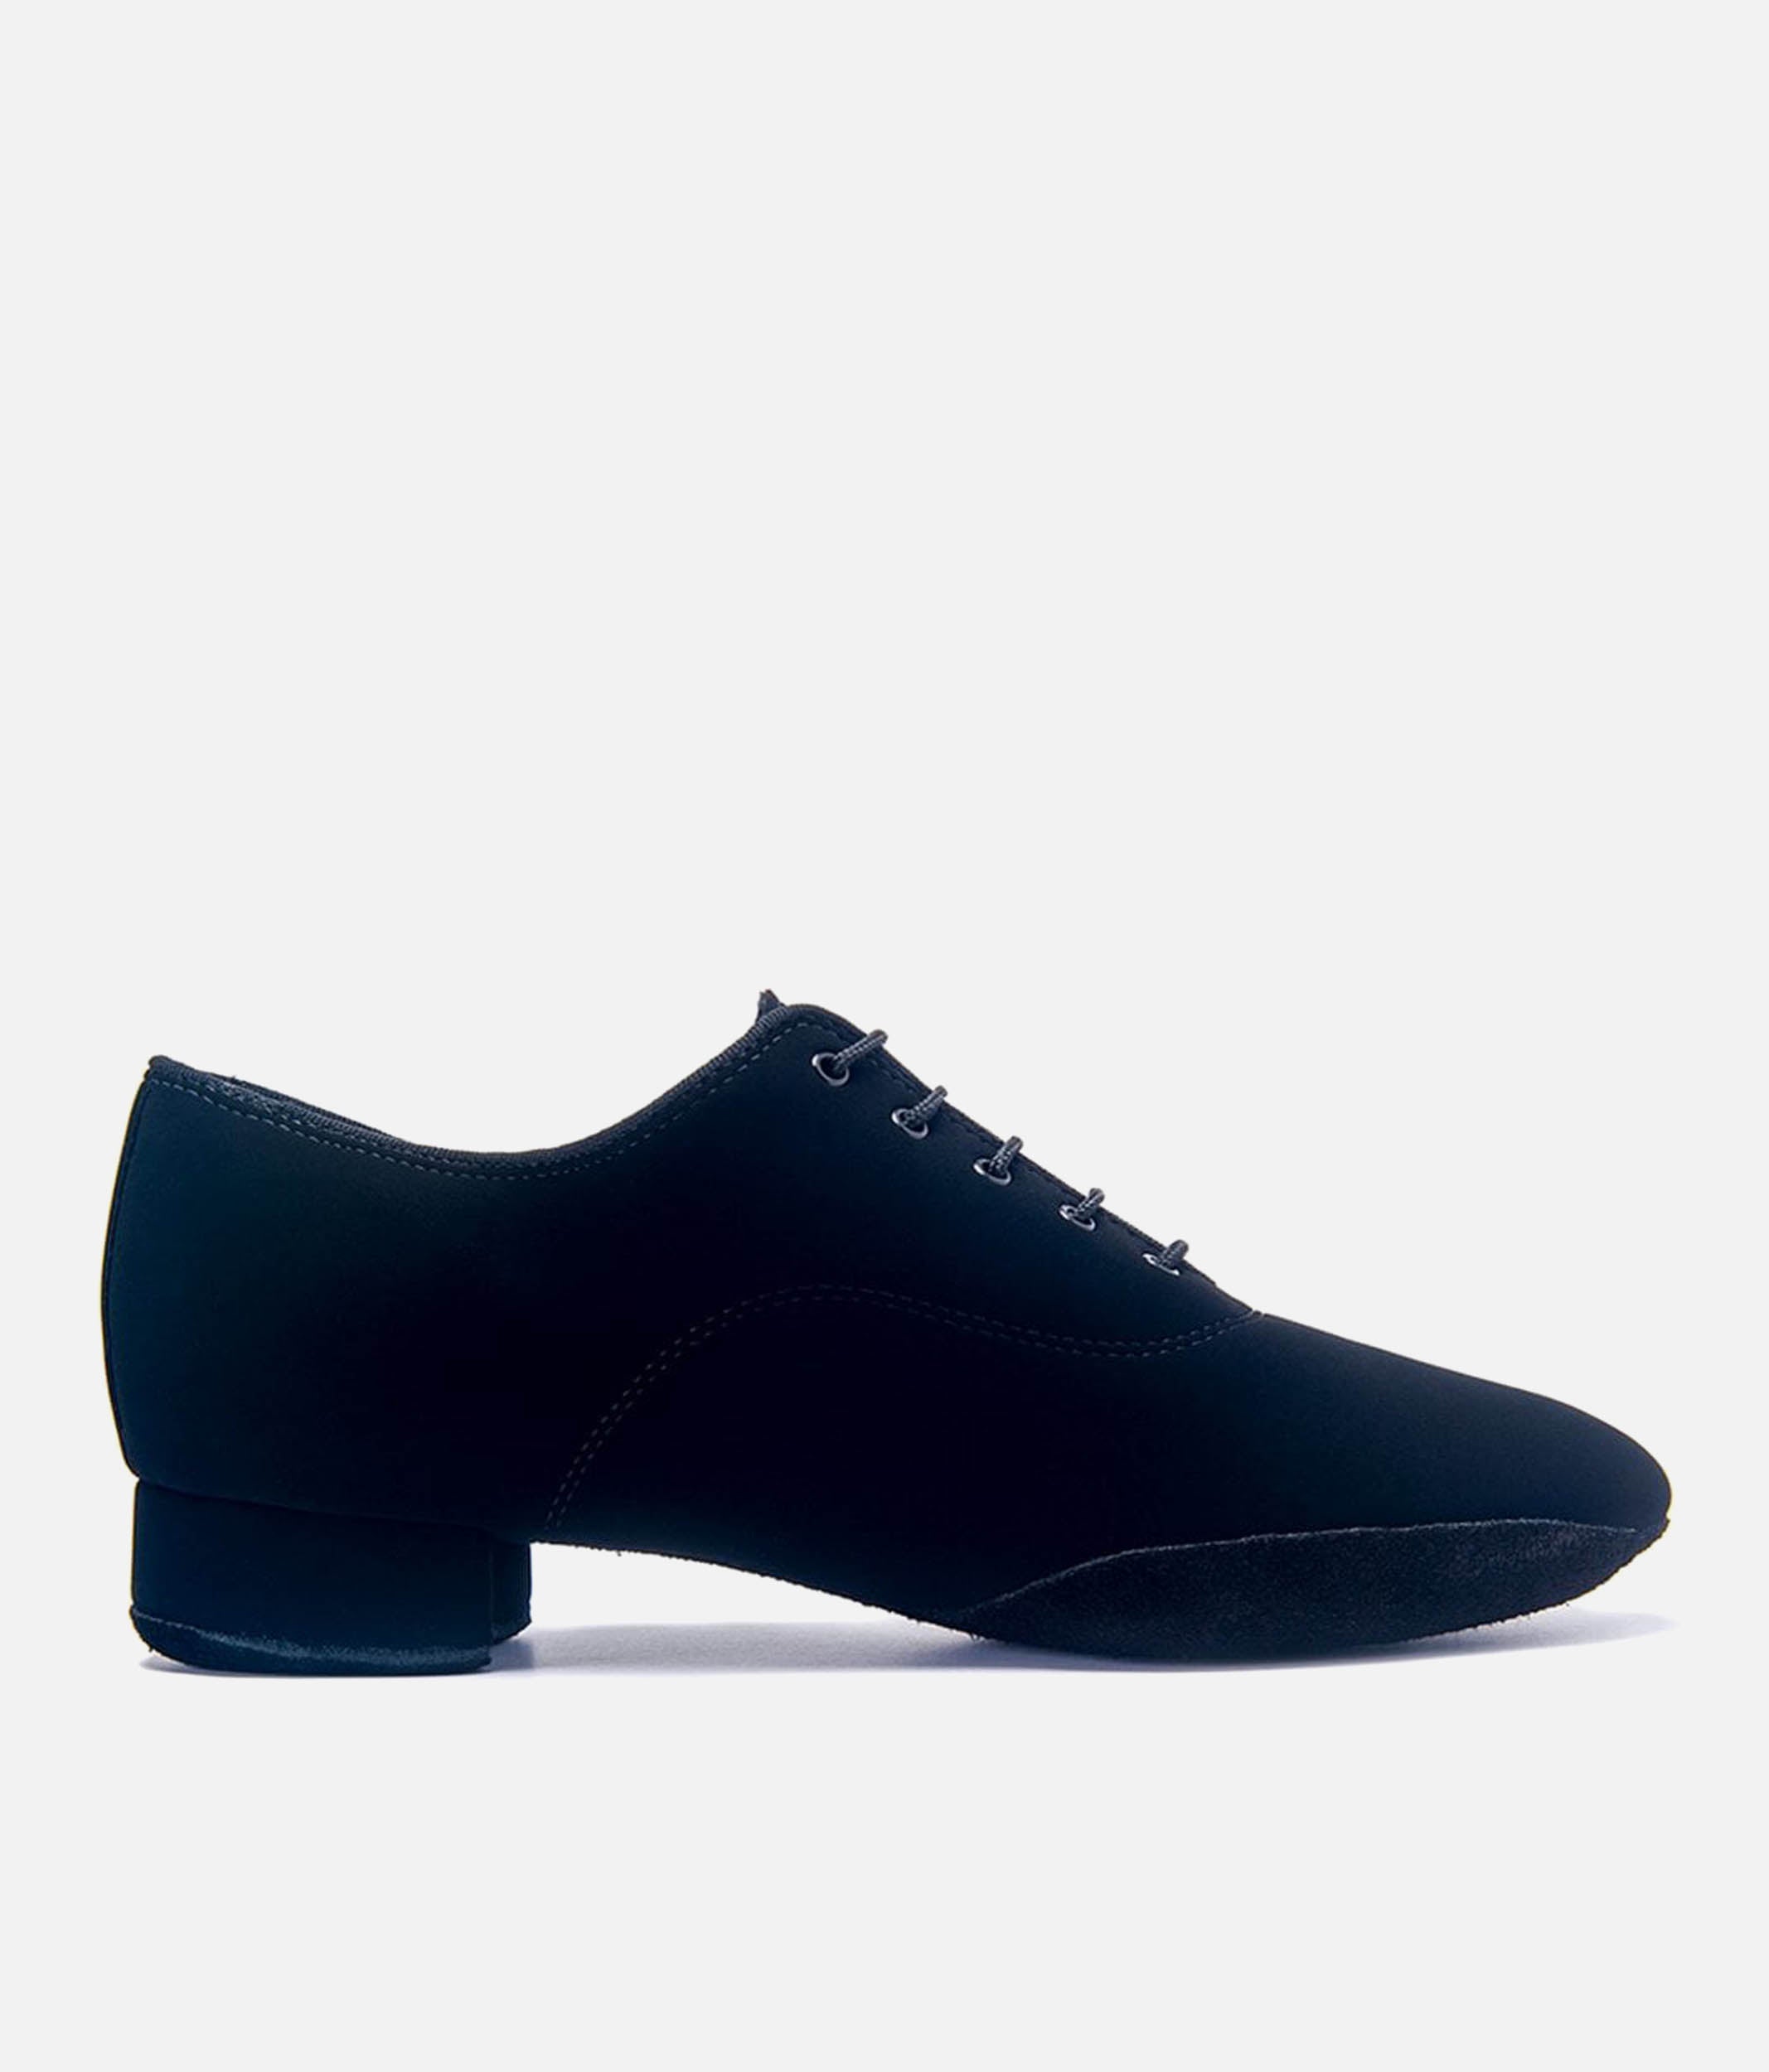 Men's Ballroom Dance Shoes, Split Sole - Contra Pro